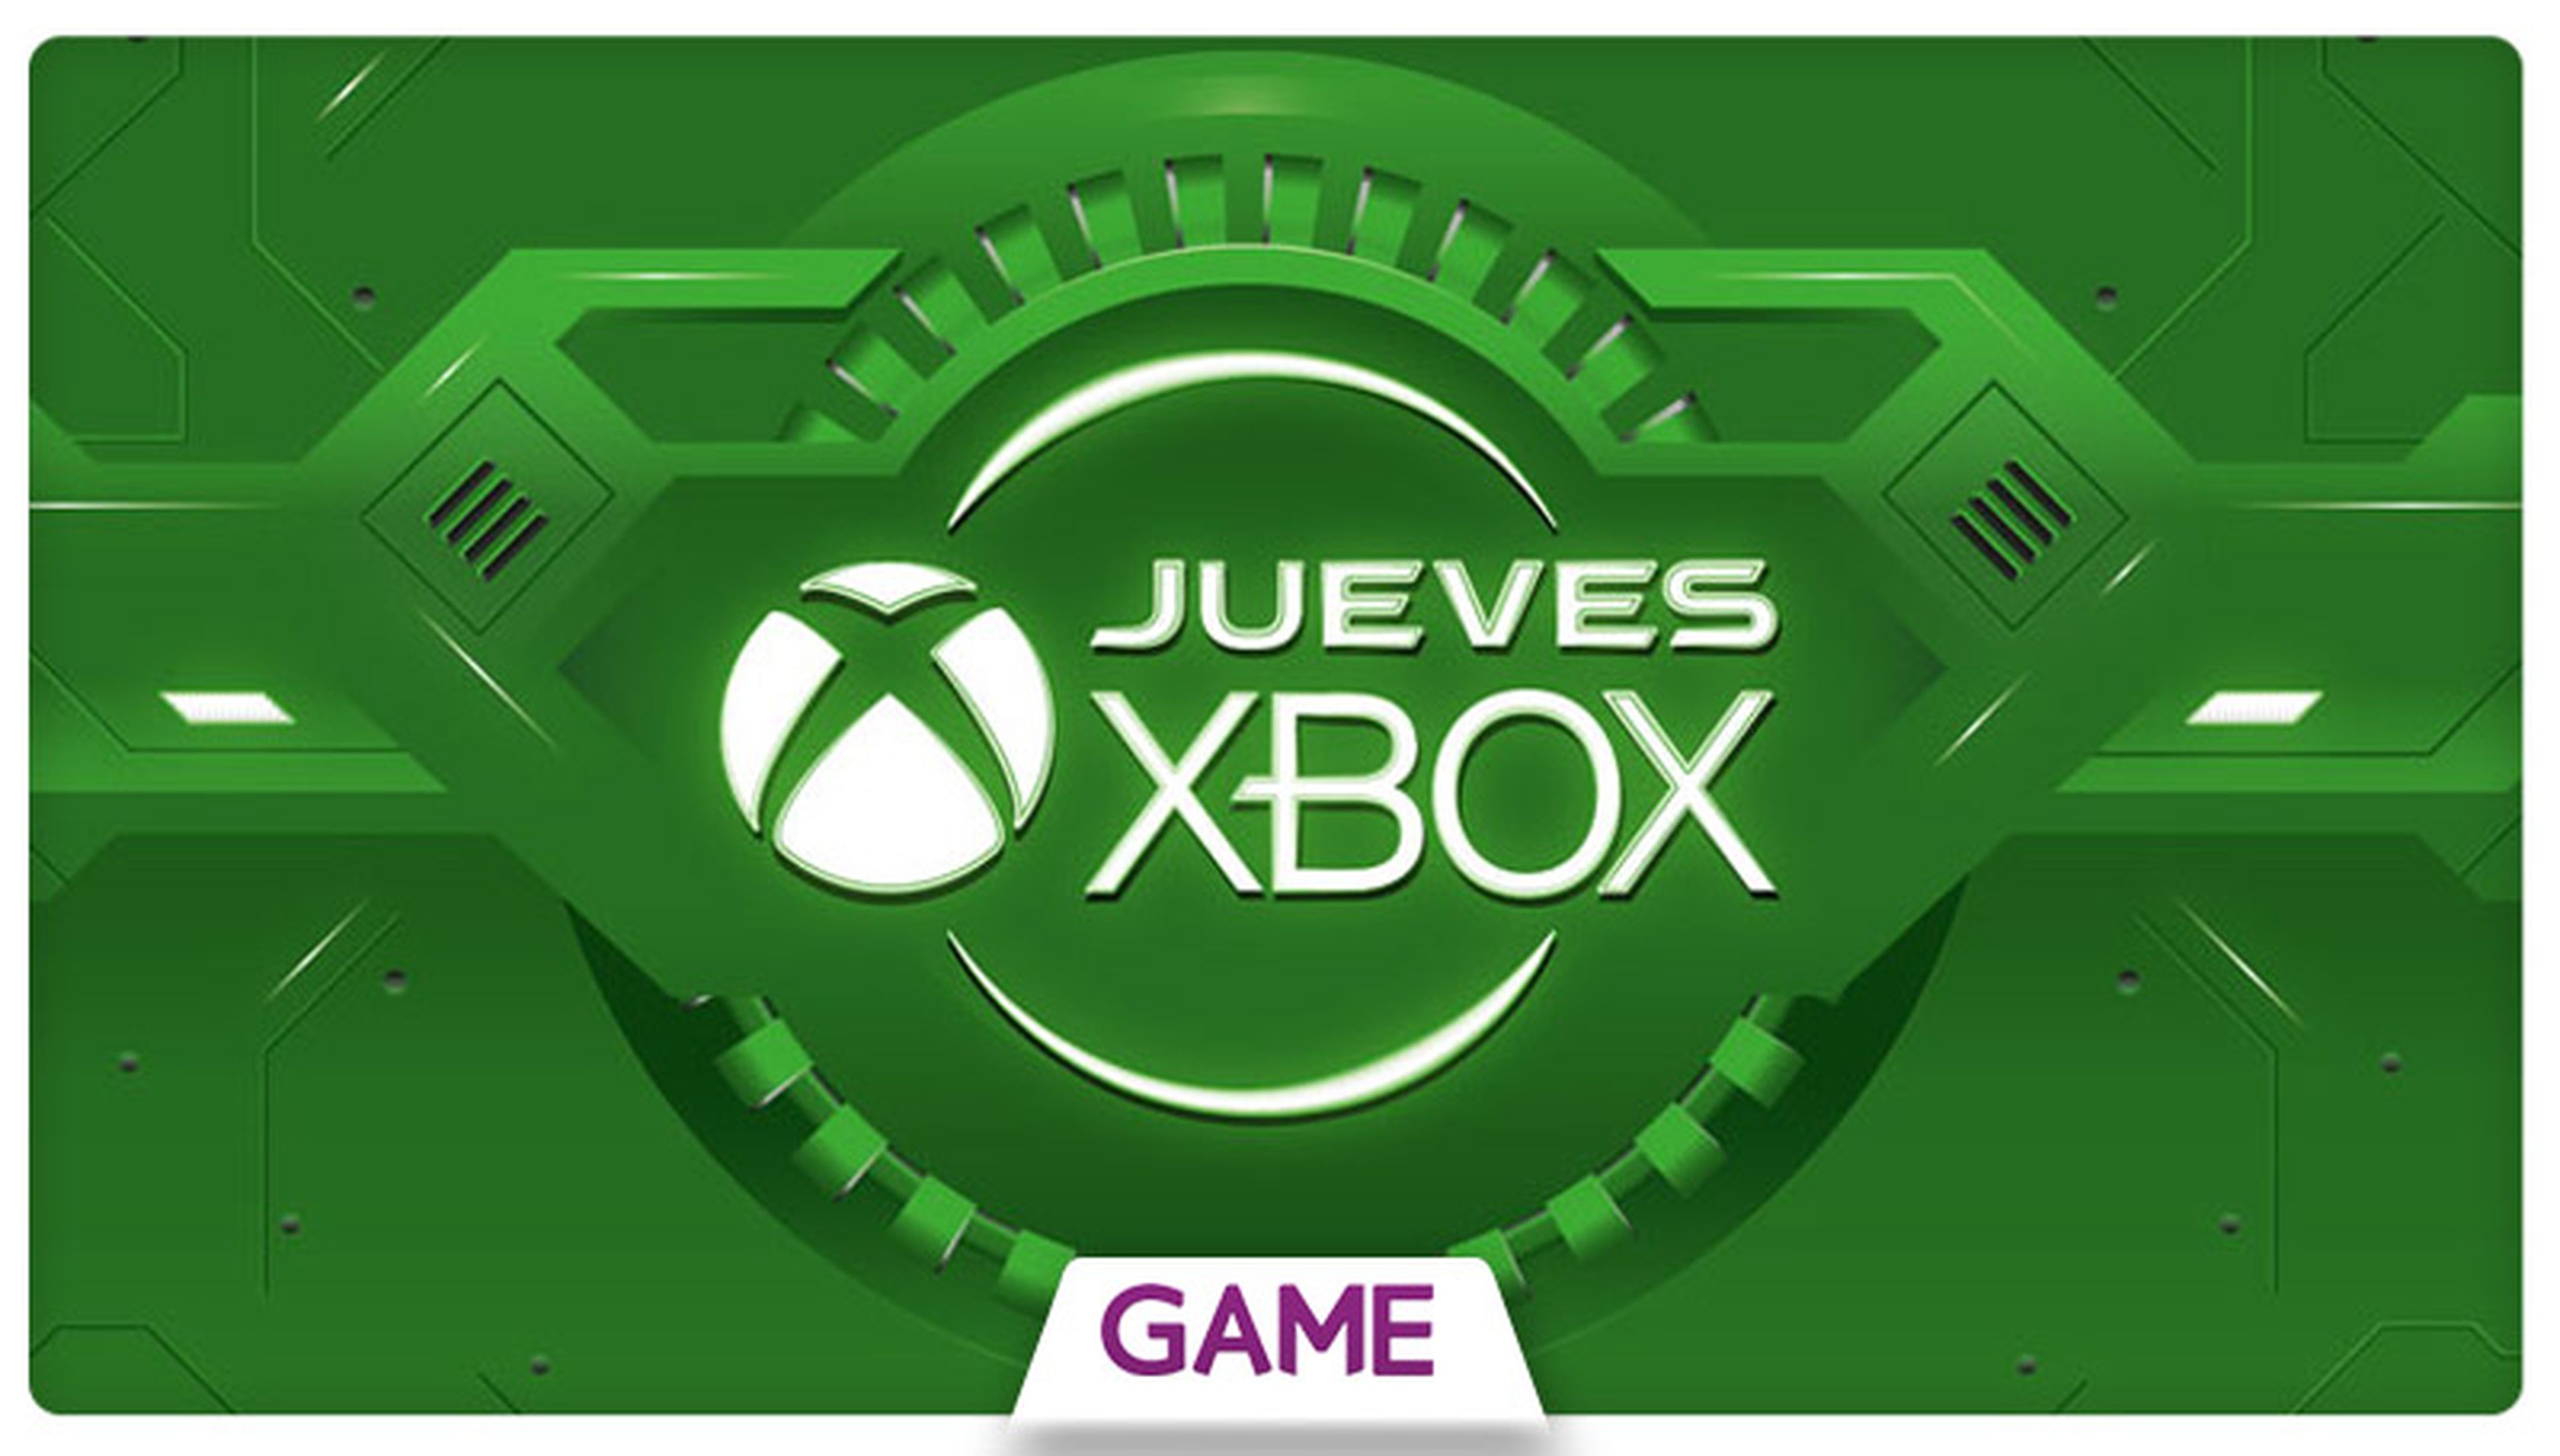 Jueves Xbox en GAME: Ofertas del 08/10/2015